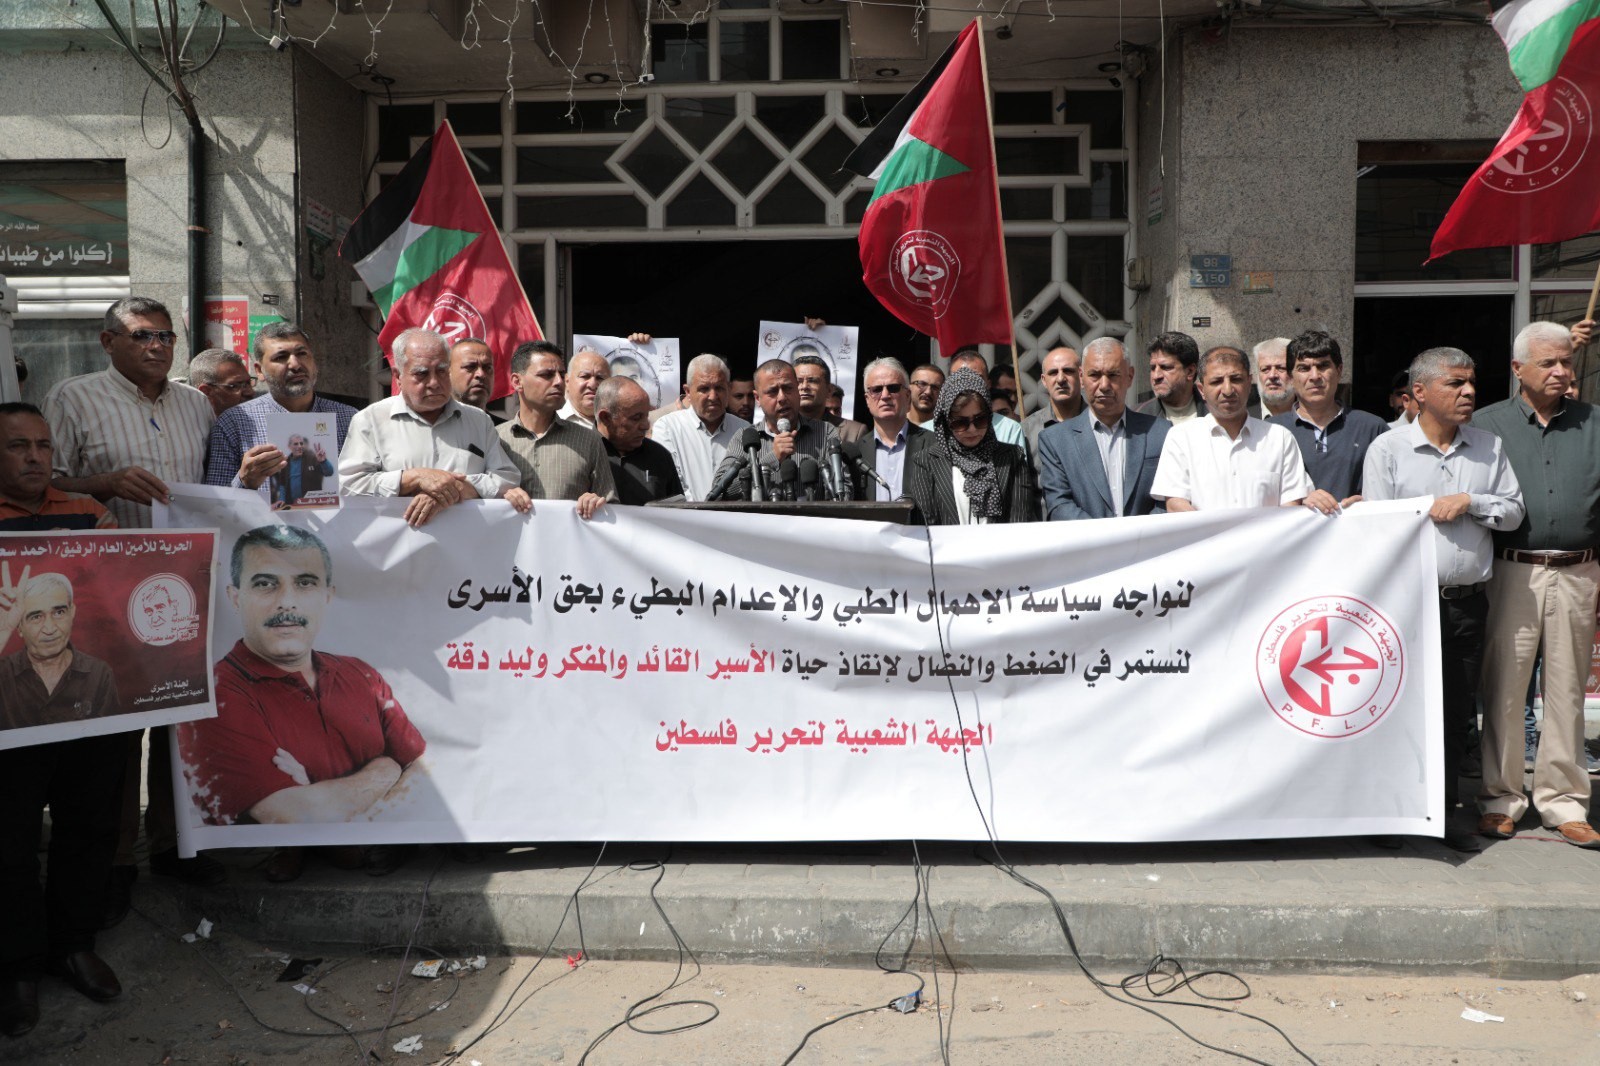 لمؤتمر الصحفي الذي نظمته الجبهة الشعبيّة لتحرير فلسطين أمام برج شوا وحصري بمدينة غزّة.jpg